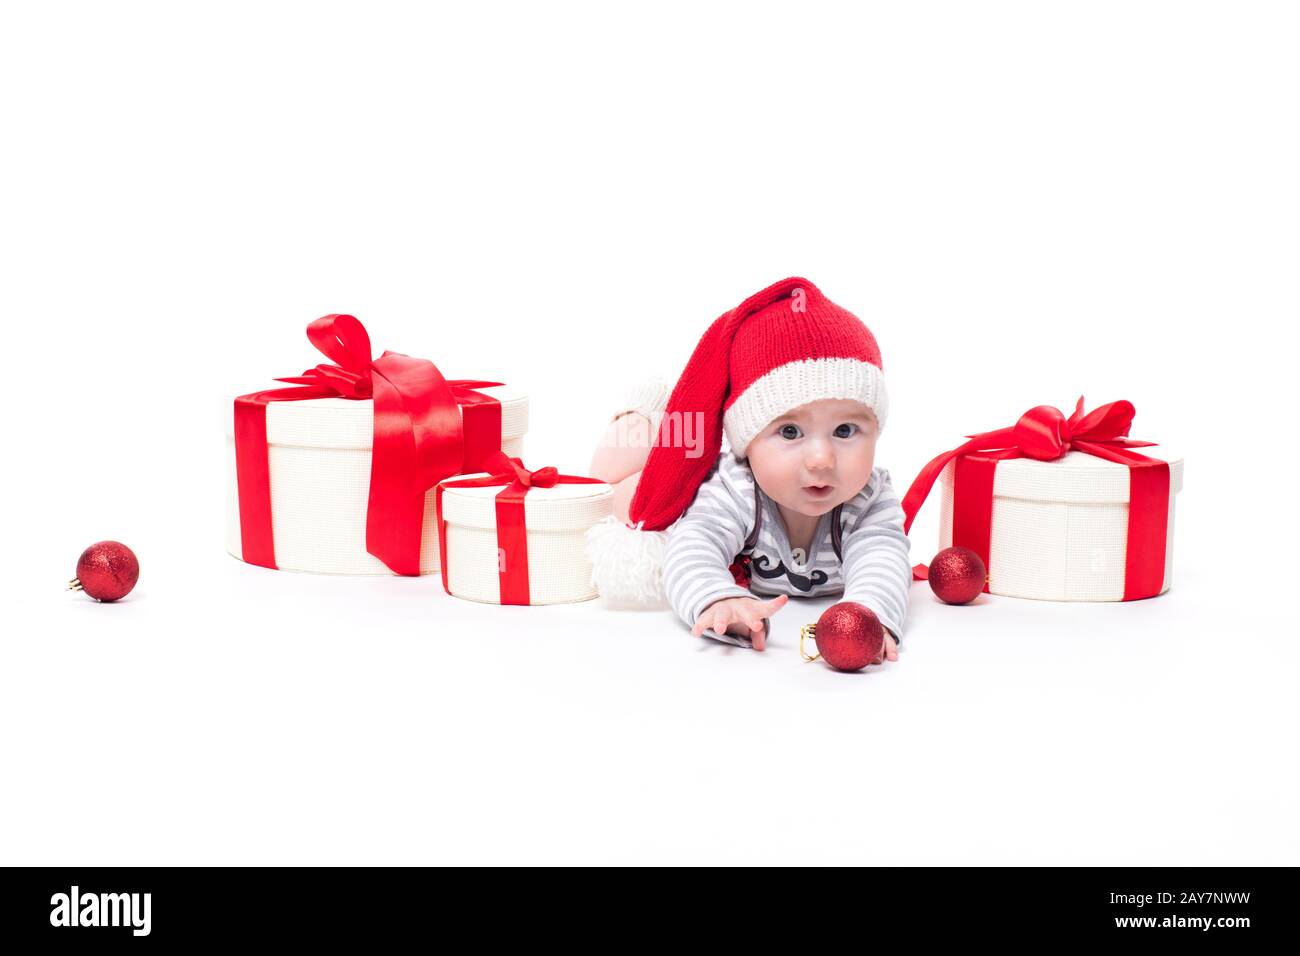 Bébé mignon dans une casquette rouge du nouvel an avec un sourire sur son visage allongé Banque D'Images